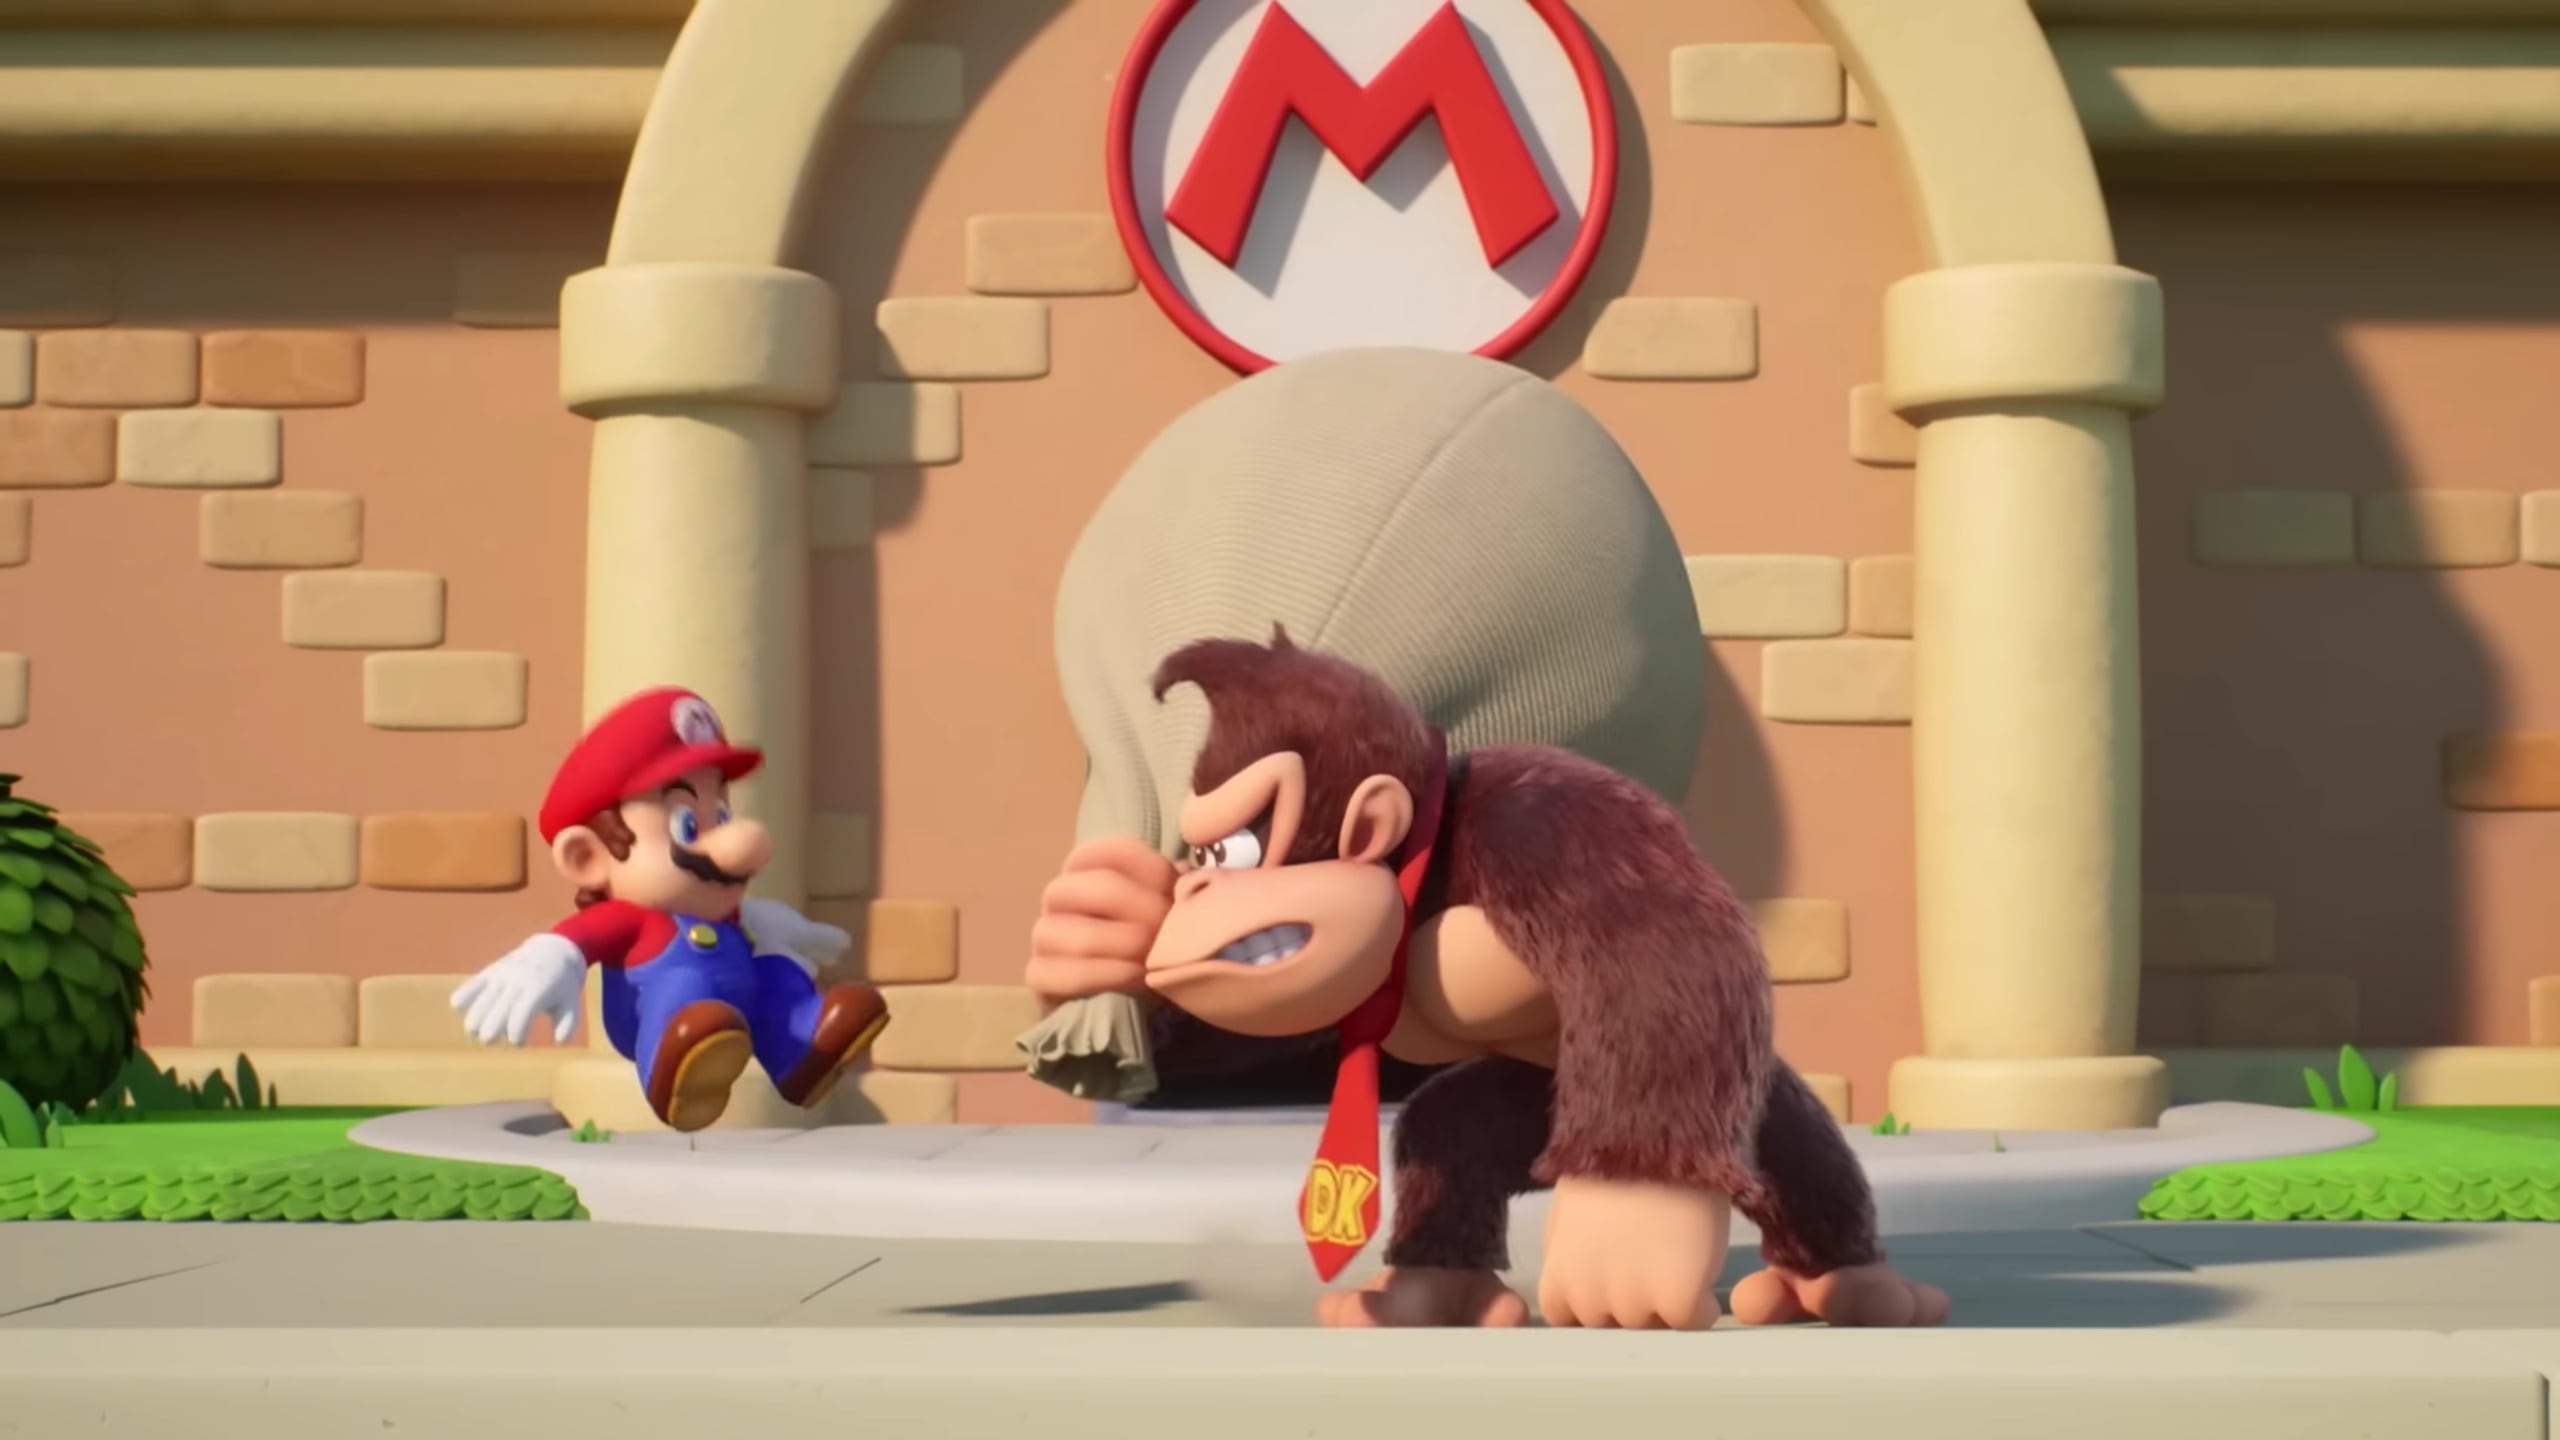 A screenshot from Mario vs Donkey Kong